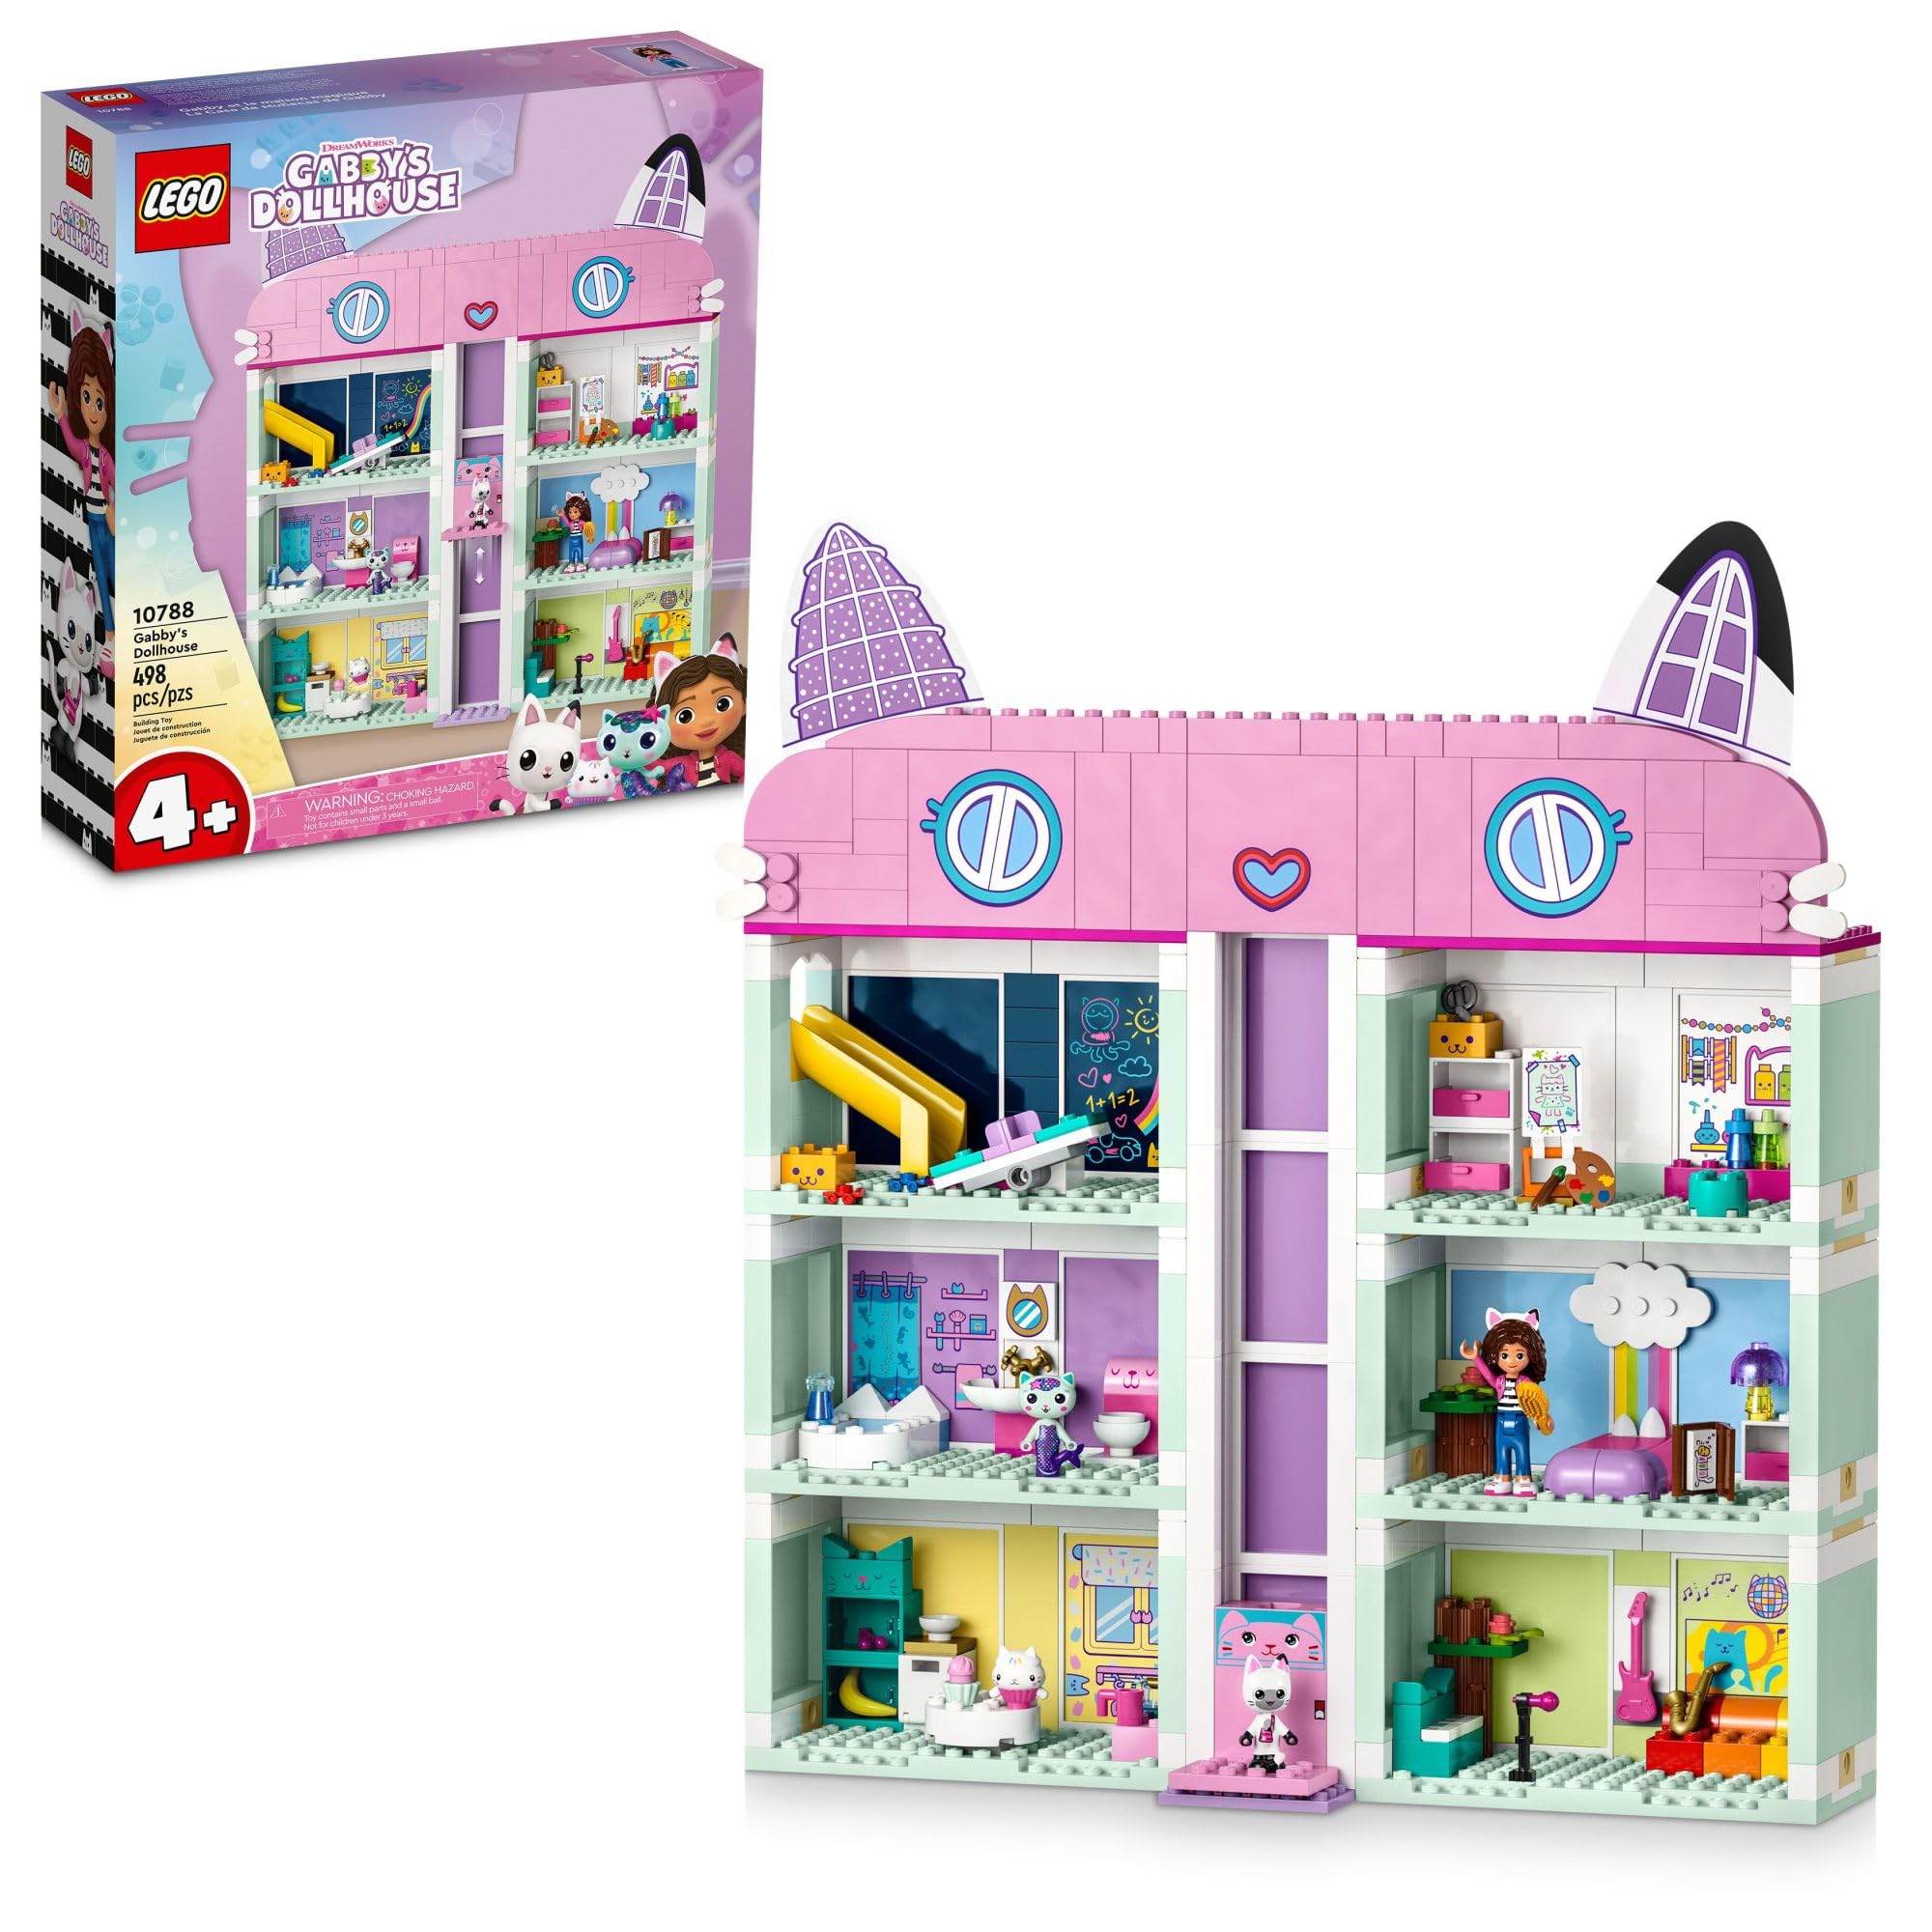 レゴ LEGO Gabbys Dollhouse 10788 Building Toy Set 8-Room Playhouse with Purrfect Details and Popular Characters from Th